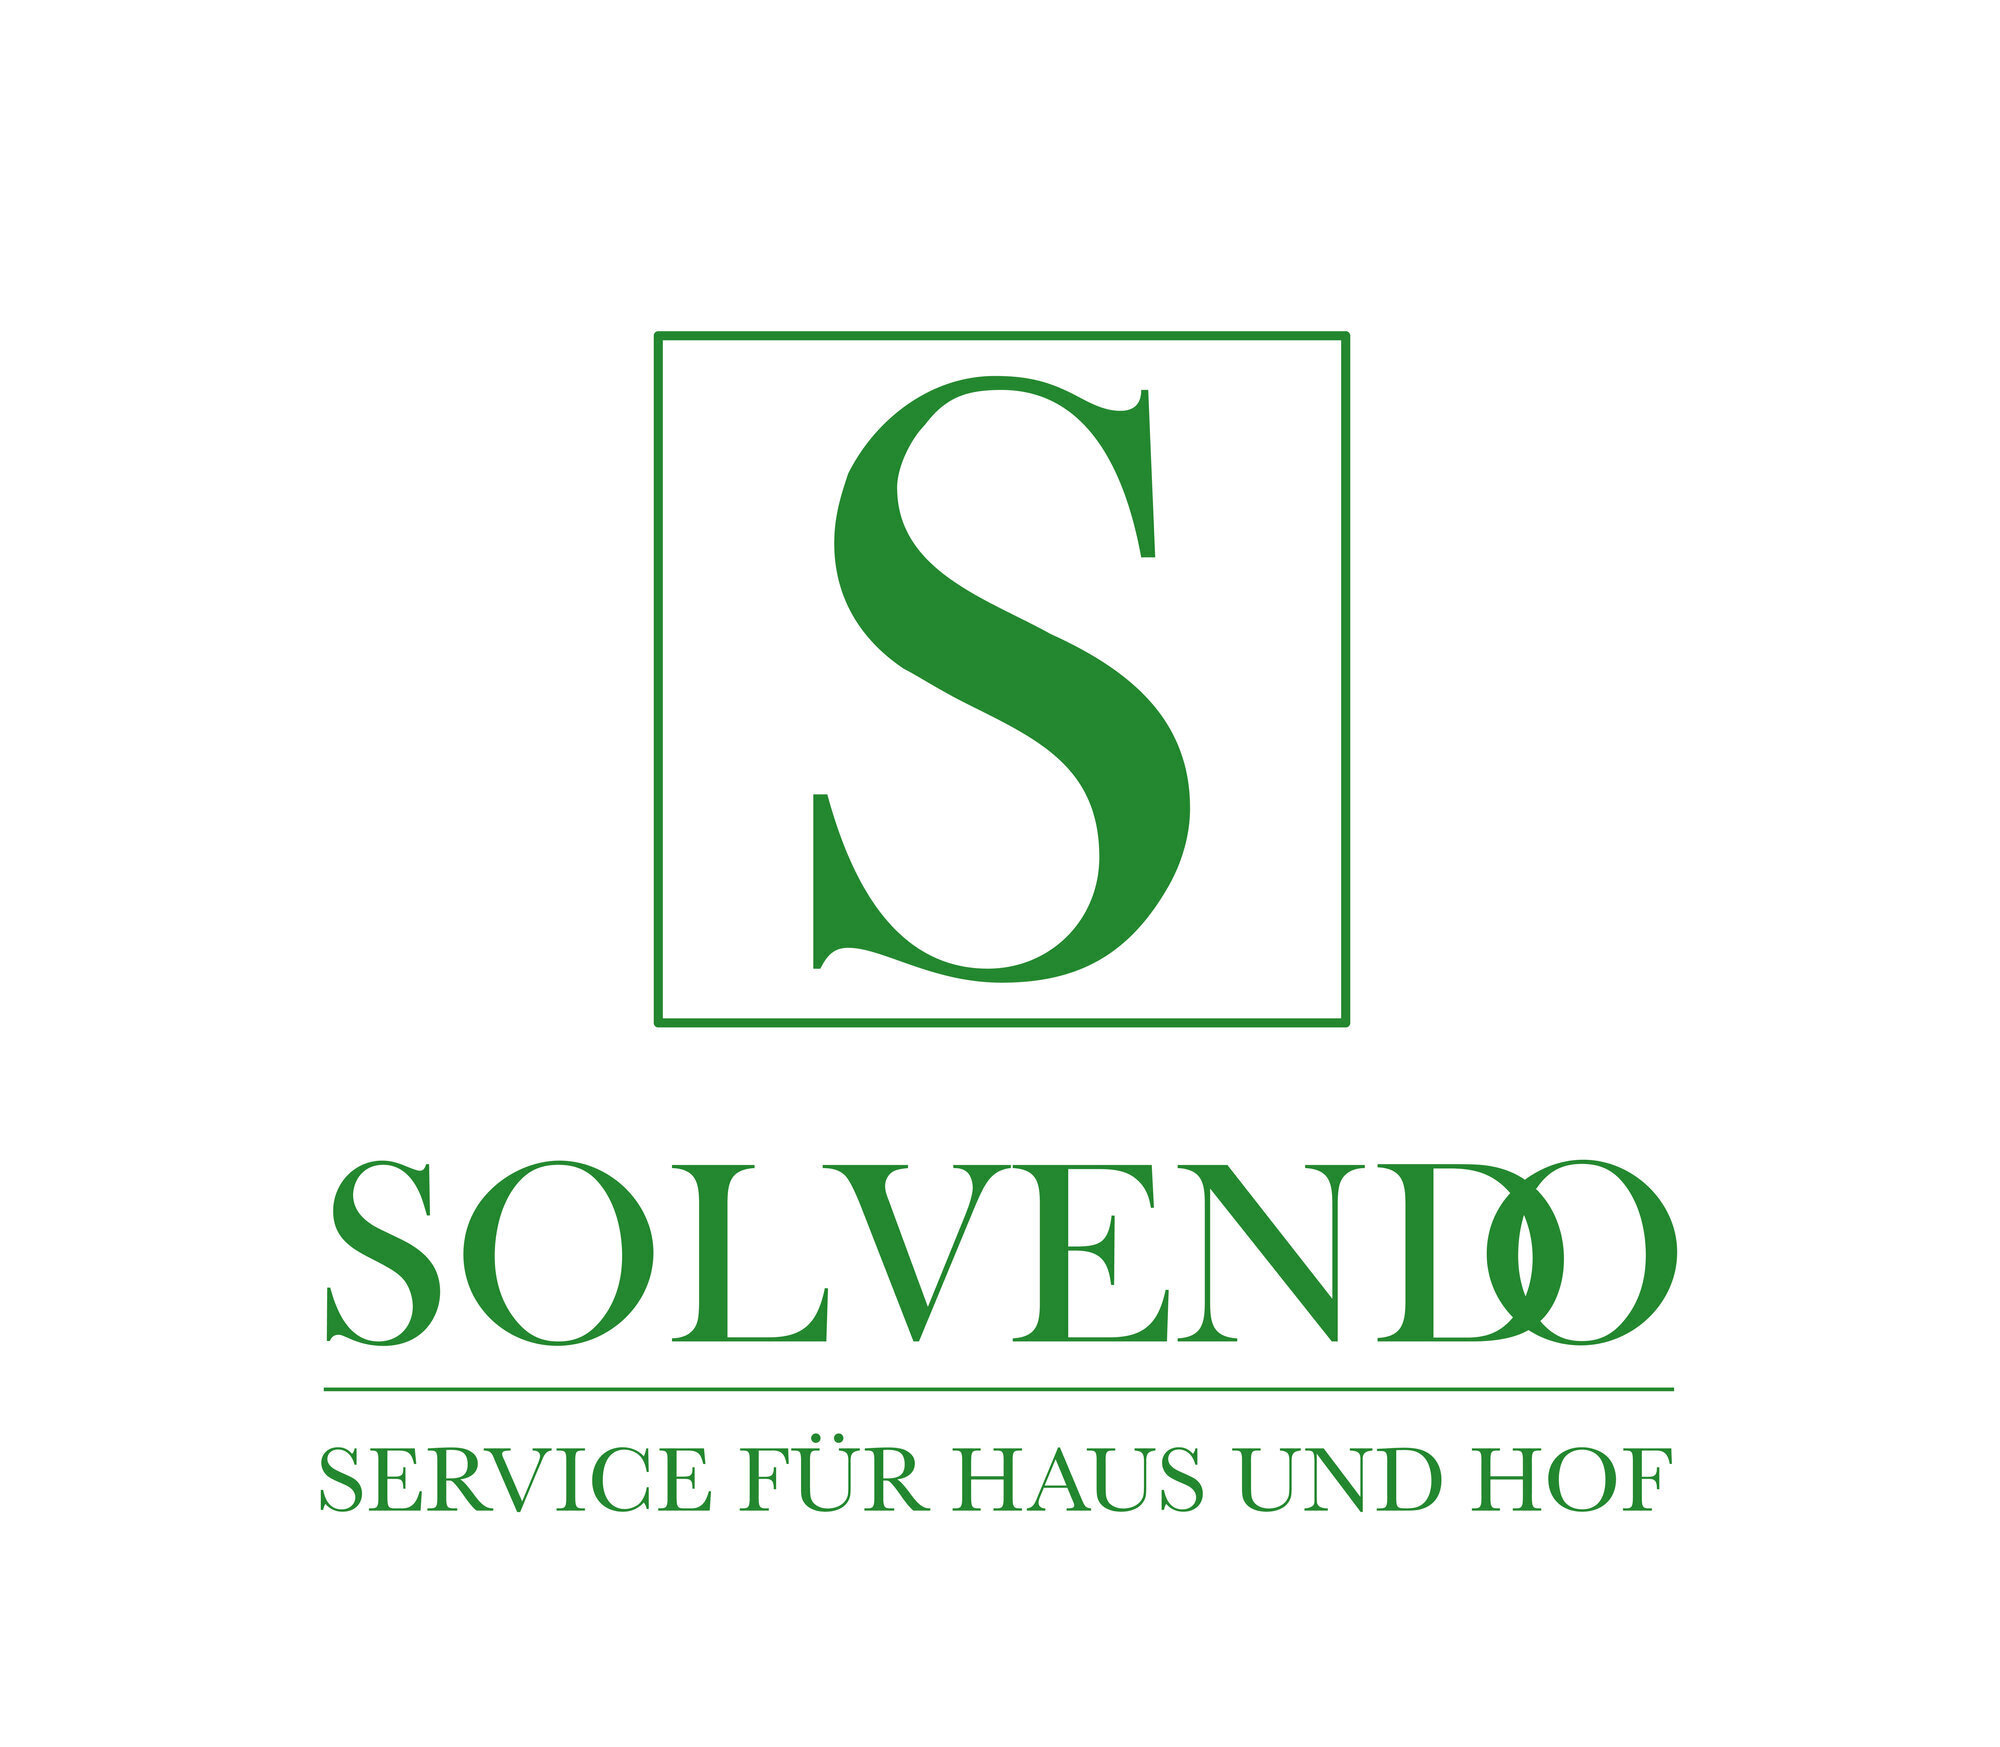 Kundenbild groß 35 Solvendo - Service für Haus und Hof